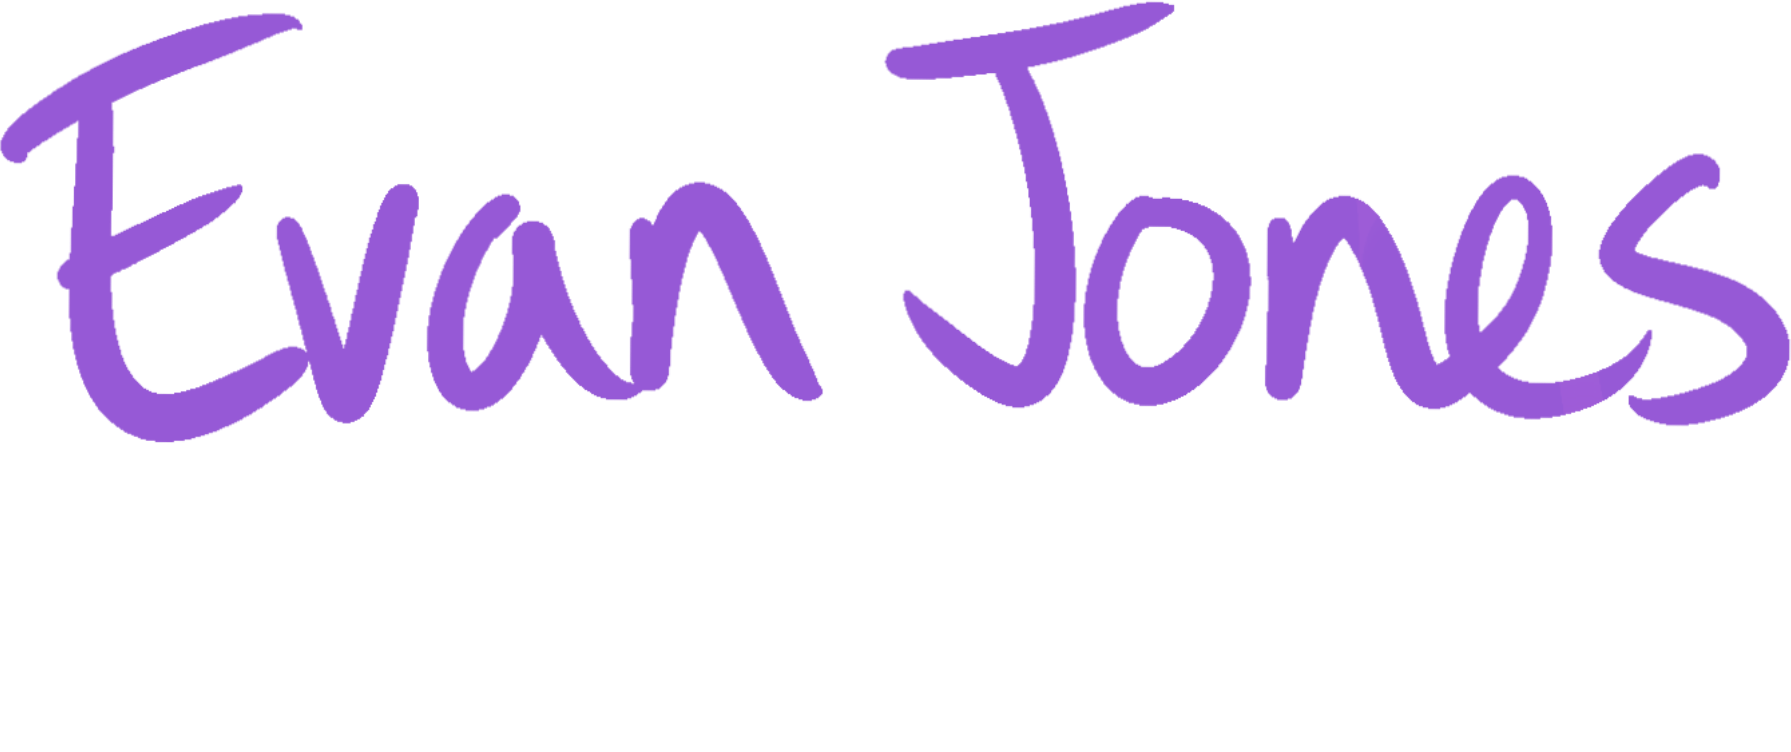 Evan Jones - Technical Designer